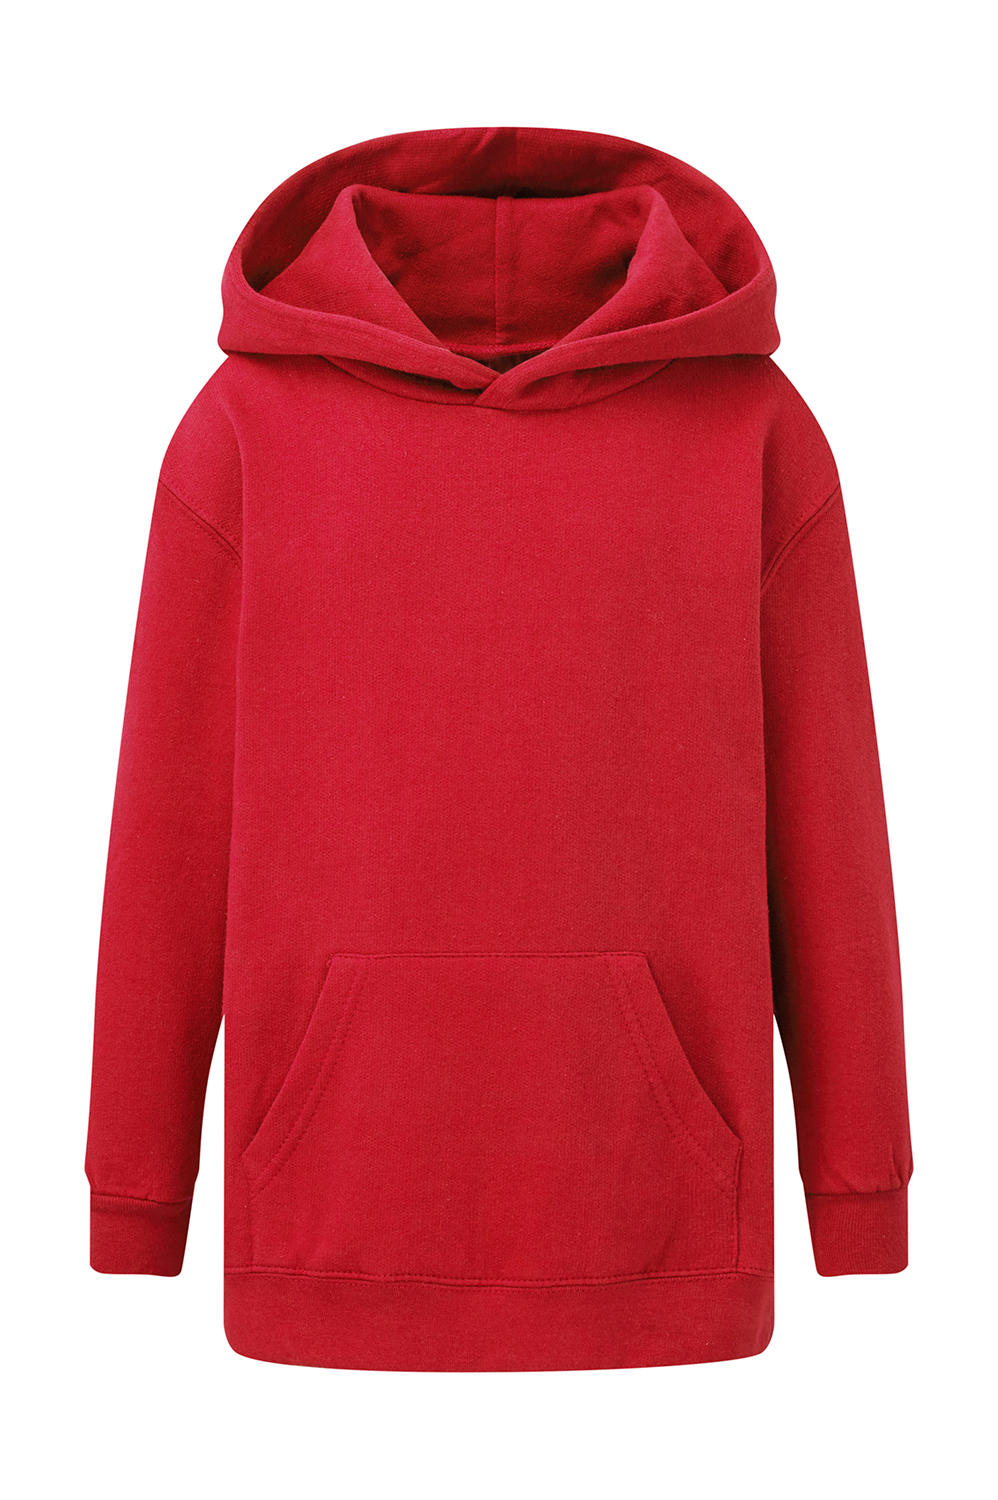  Kids Hooded Sweatshirt in Farbe Red